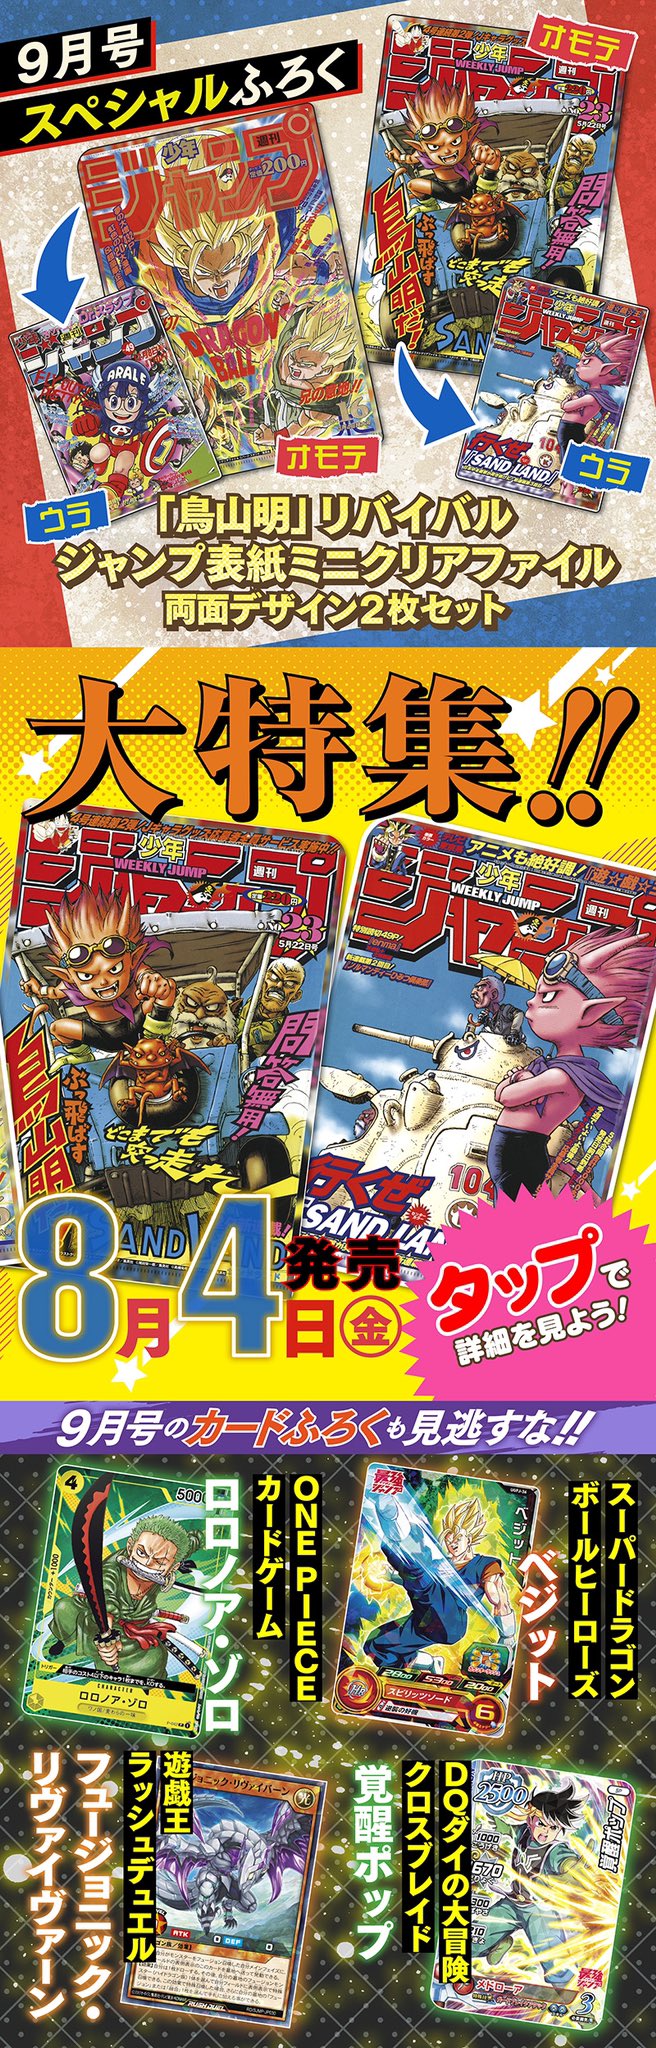 Saikyō Jump 9 2023 + One Piece Promo P-047 Zoro + altro